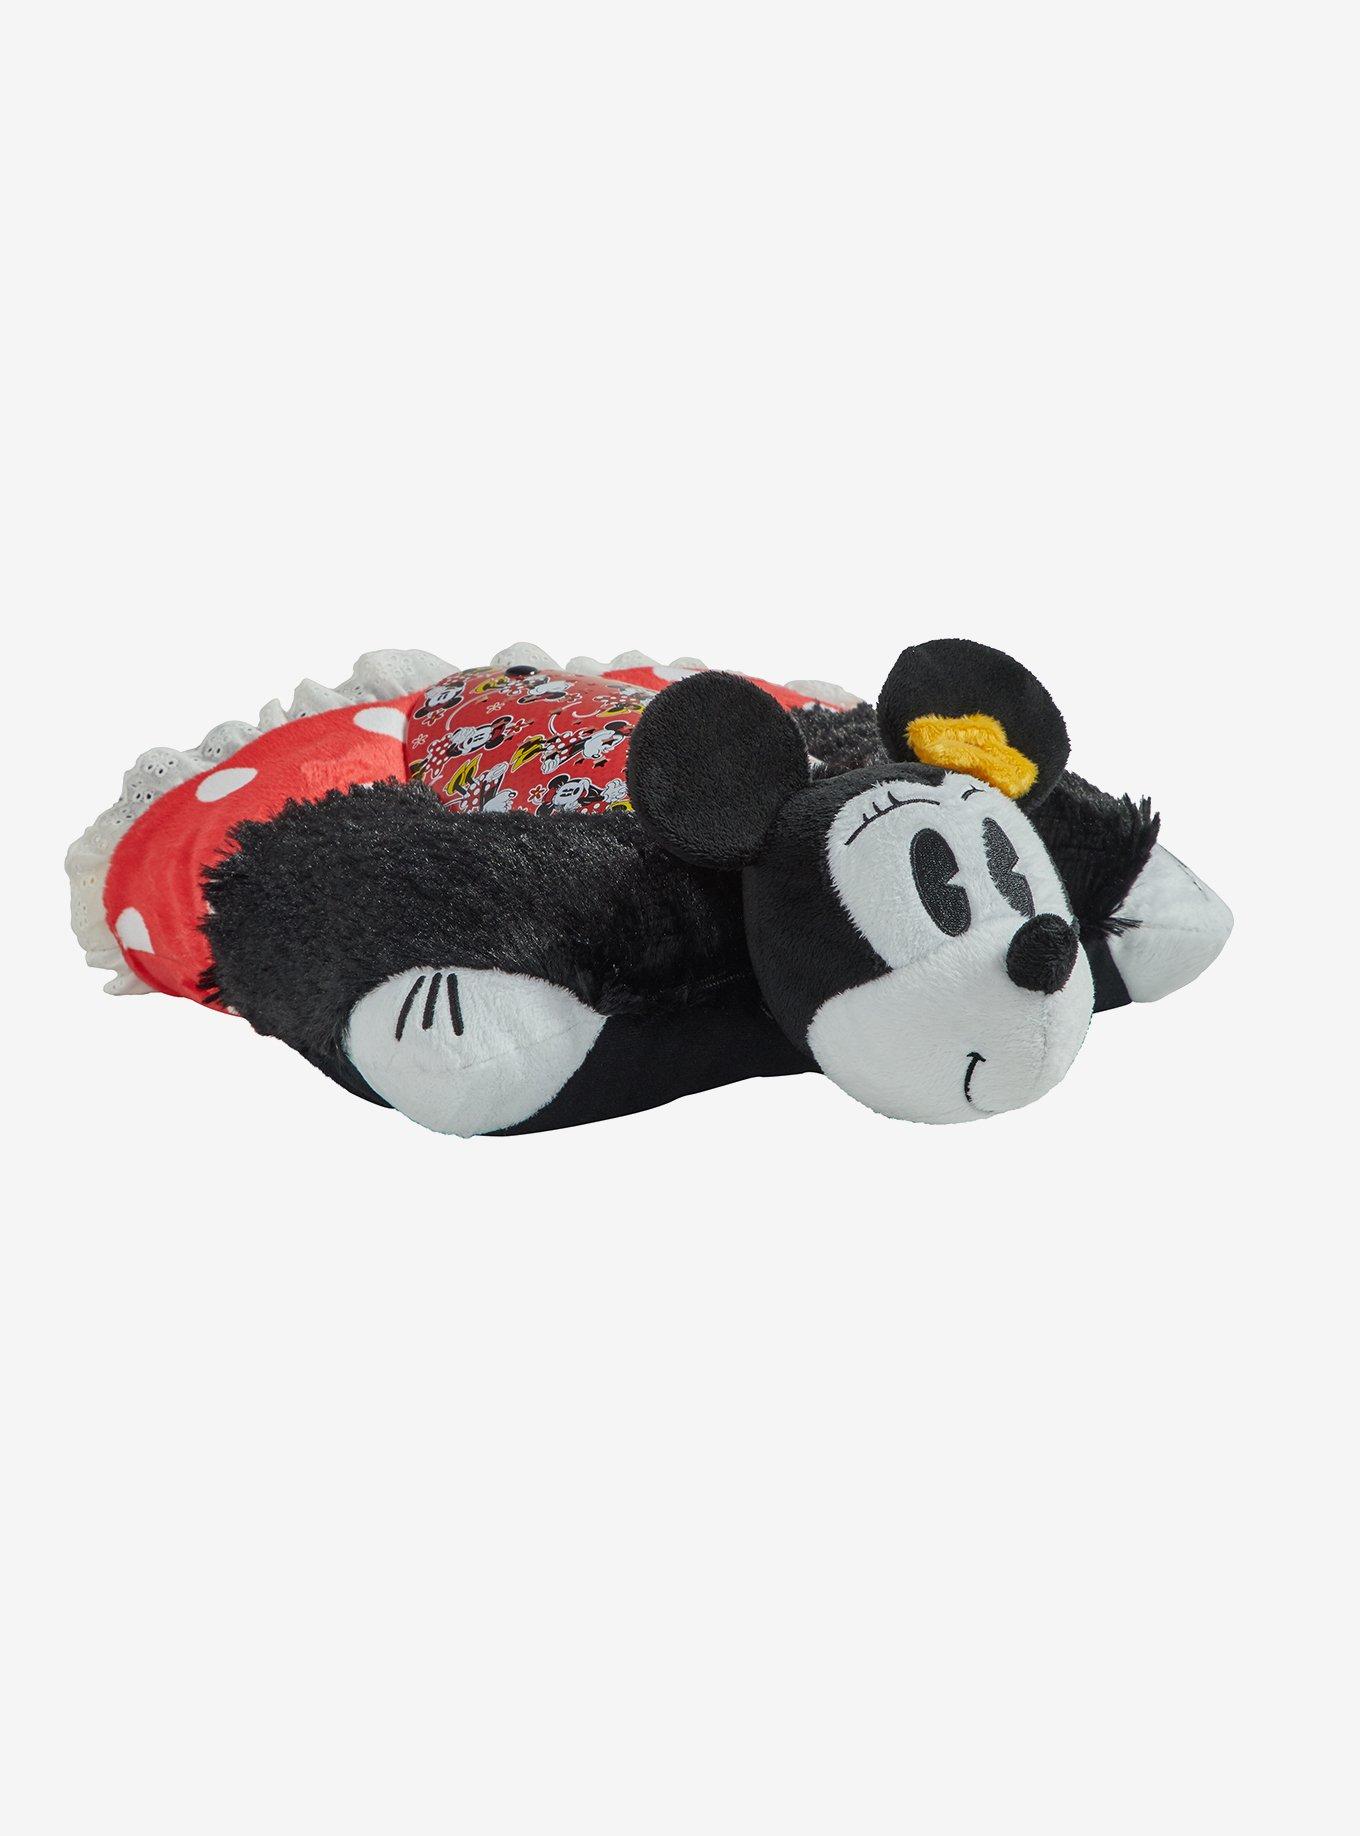 Disney Minnie Retro Pillow Pets Plush Sleeptime Lite, , alternate